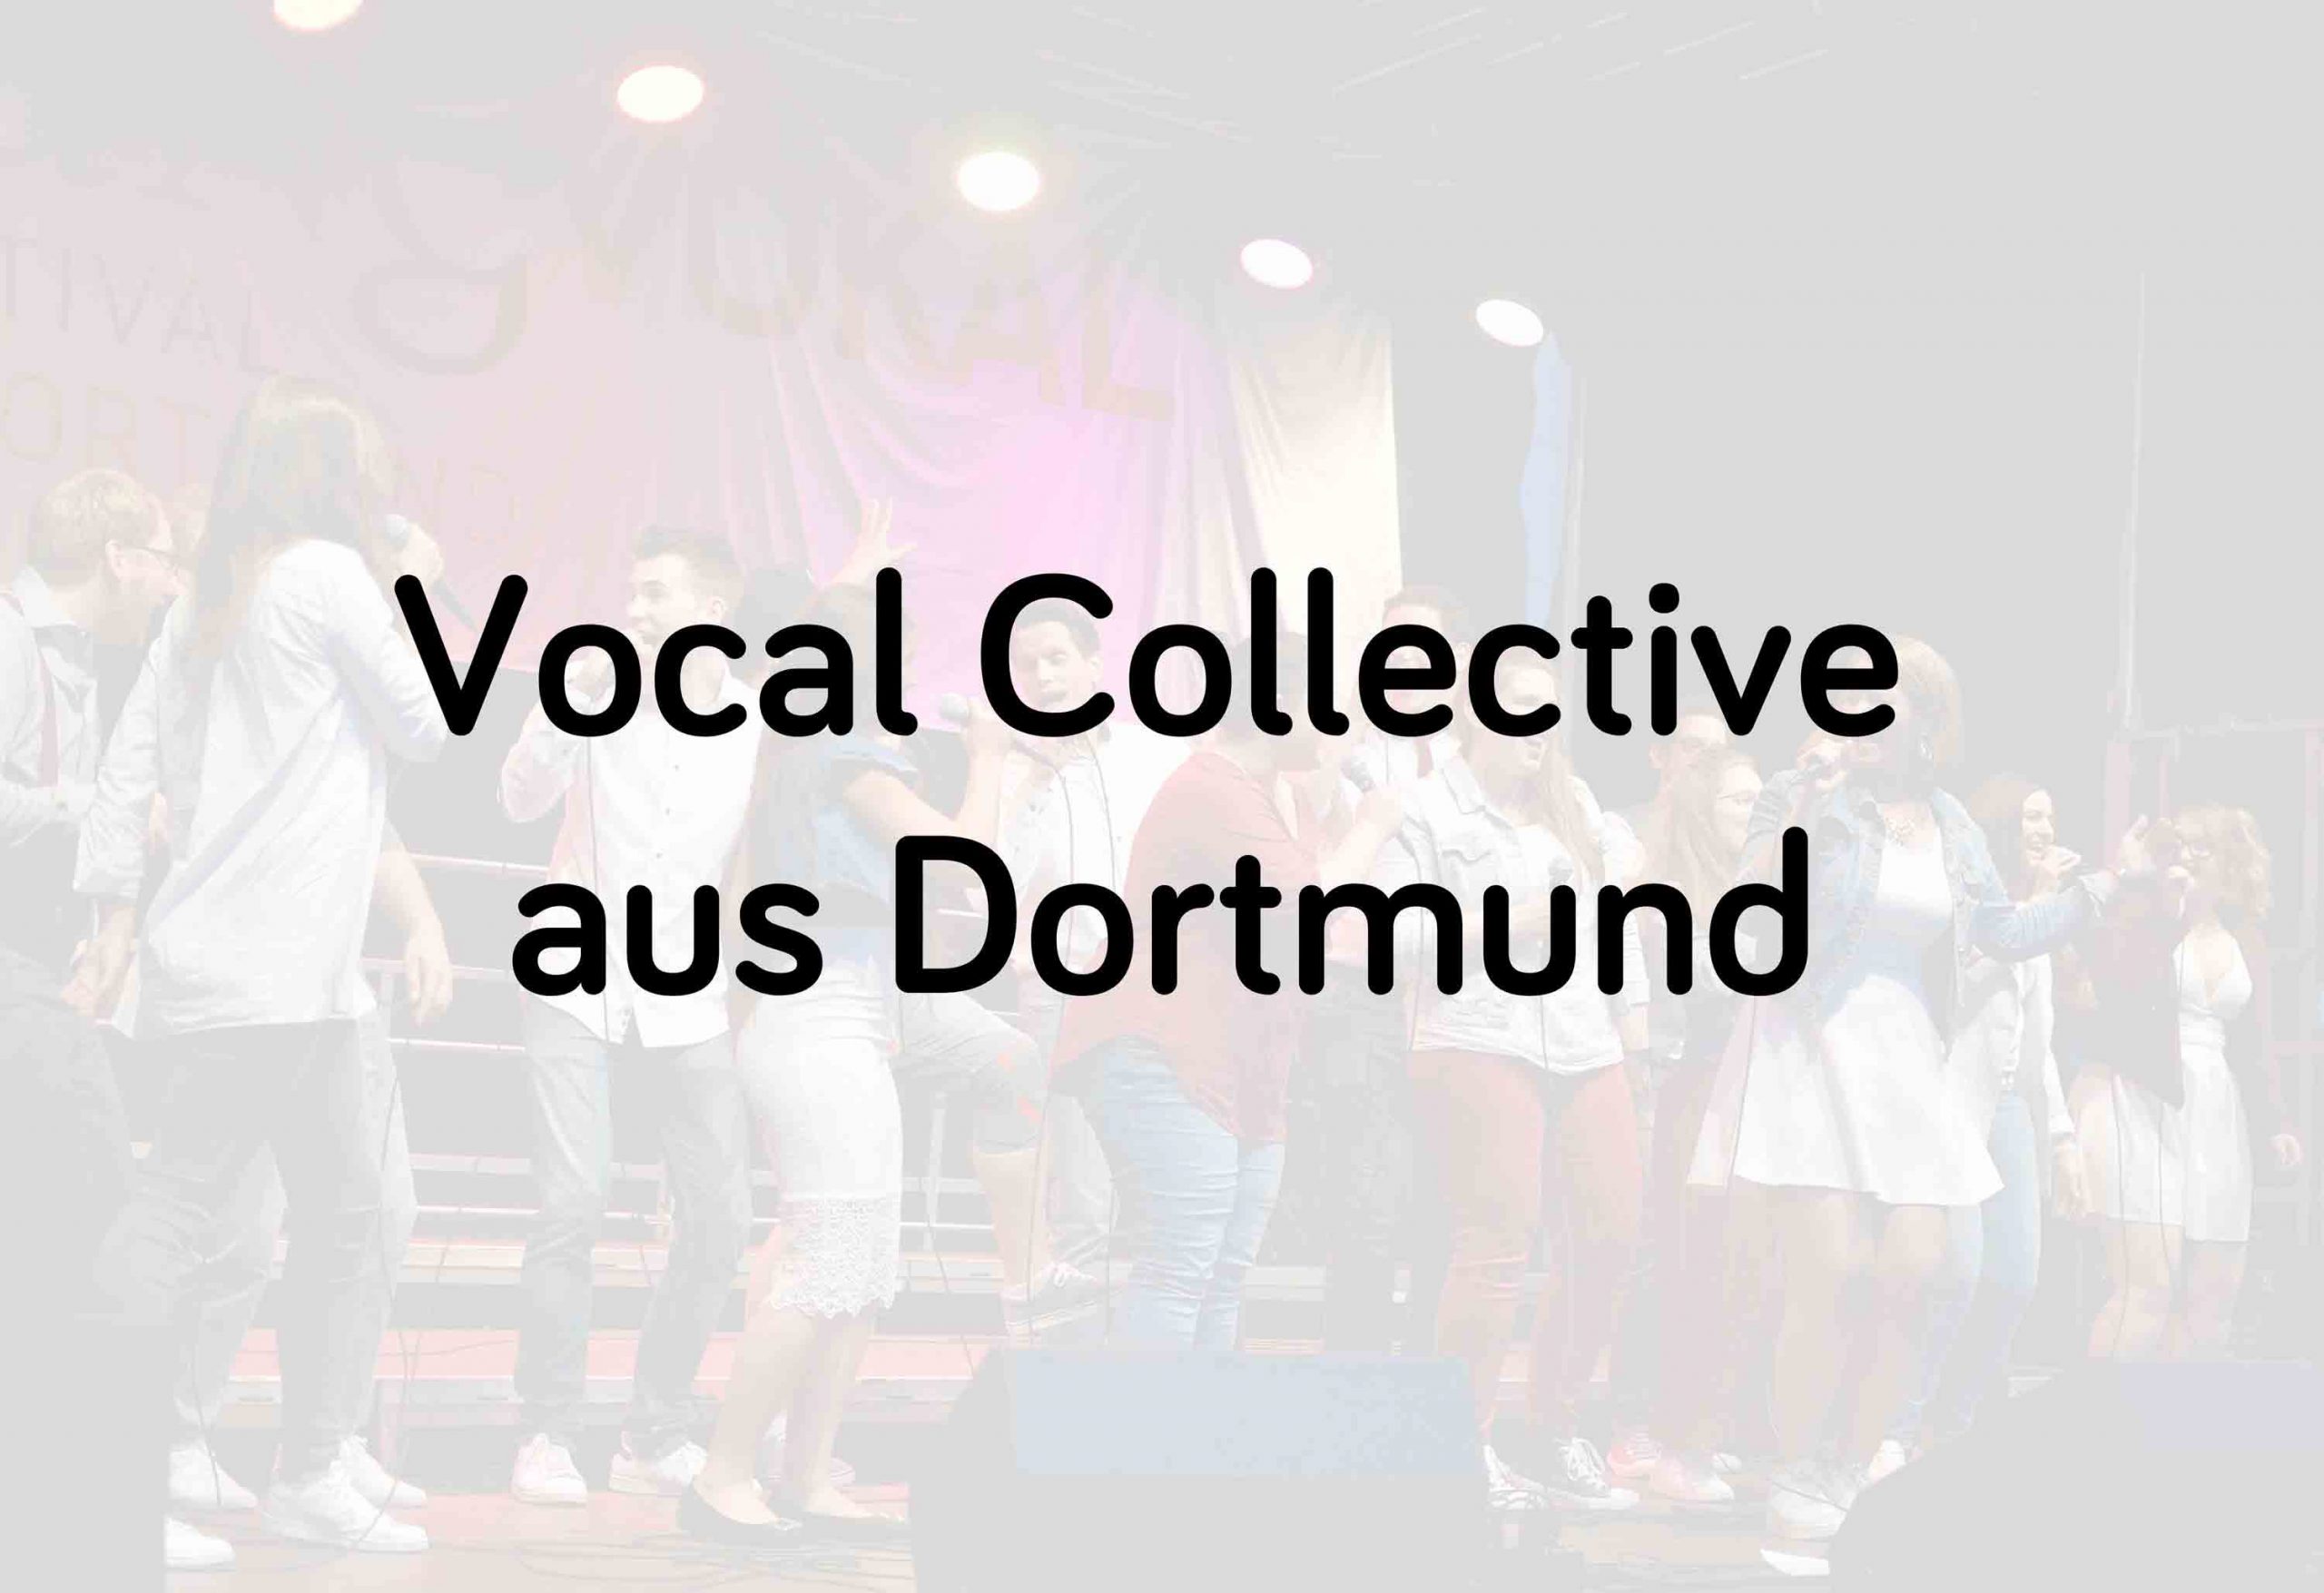 Vocal Collective aus Dortmund